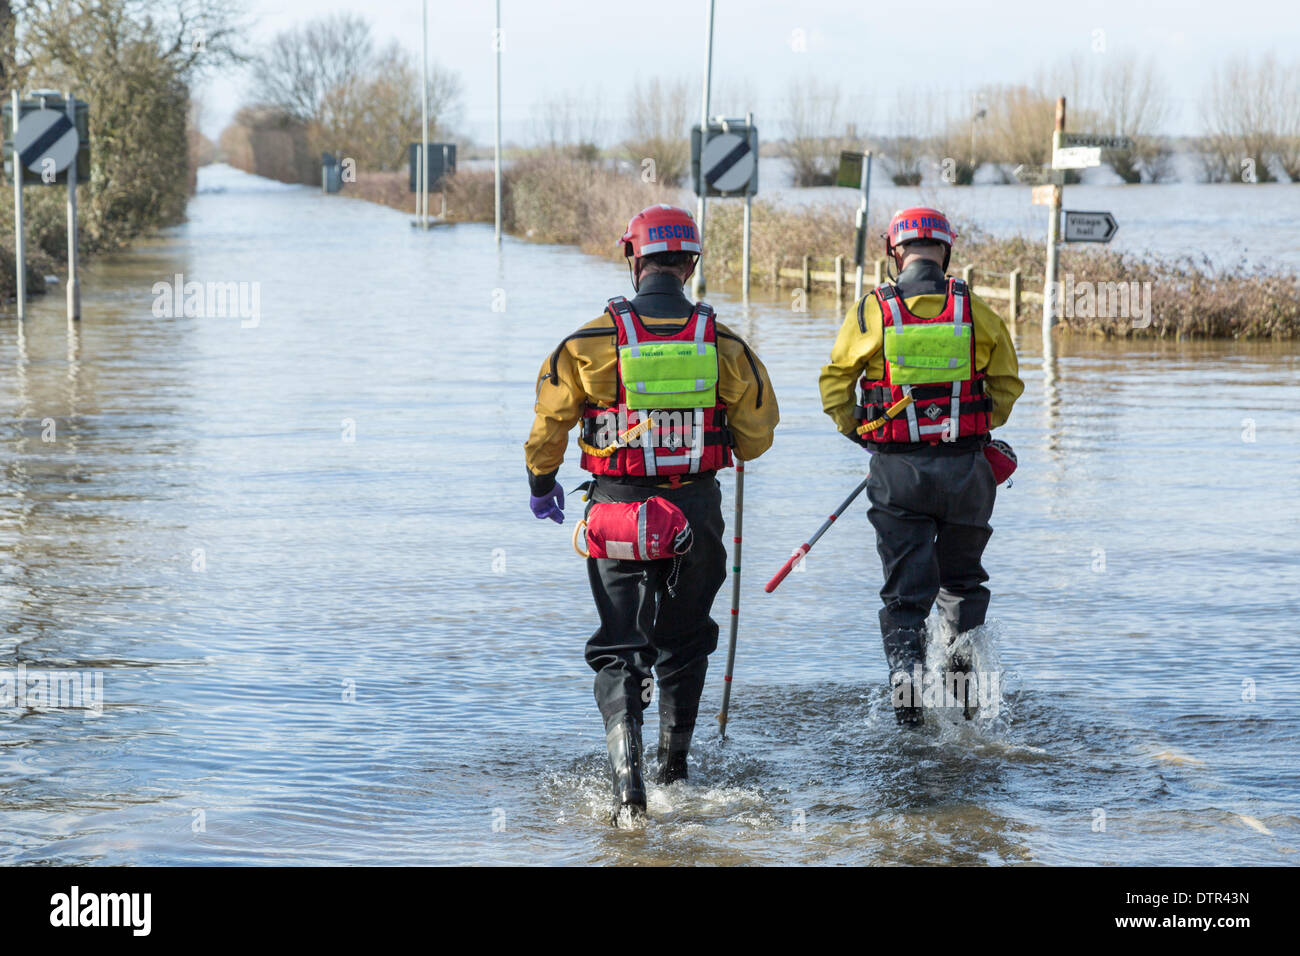 Burrowbridge, UK. Feb 22, 2014. Le Somerset les agents de service d'incendie et de sauvetage patauger dans l'eau de l'inondation à Burrowbridge le 22 février 2014. Vêtus de gilets et échassiers, deux hommes à pied le long de la chaussée de l'A361, aujourd'hui totalement submergé par les crues au cours de l'inondation la plus lourde dans l'histoire vivante sur le Somerset Levels. Ils sont à l'aide de mesure afin de déterminer la profondeur de l'eau le long du chariot qui s'élève actuellement à 1,1 mètres à ce carrefour. Credit : Nick Cable/Alamy Live News Banque D'Images